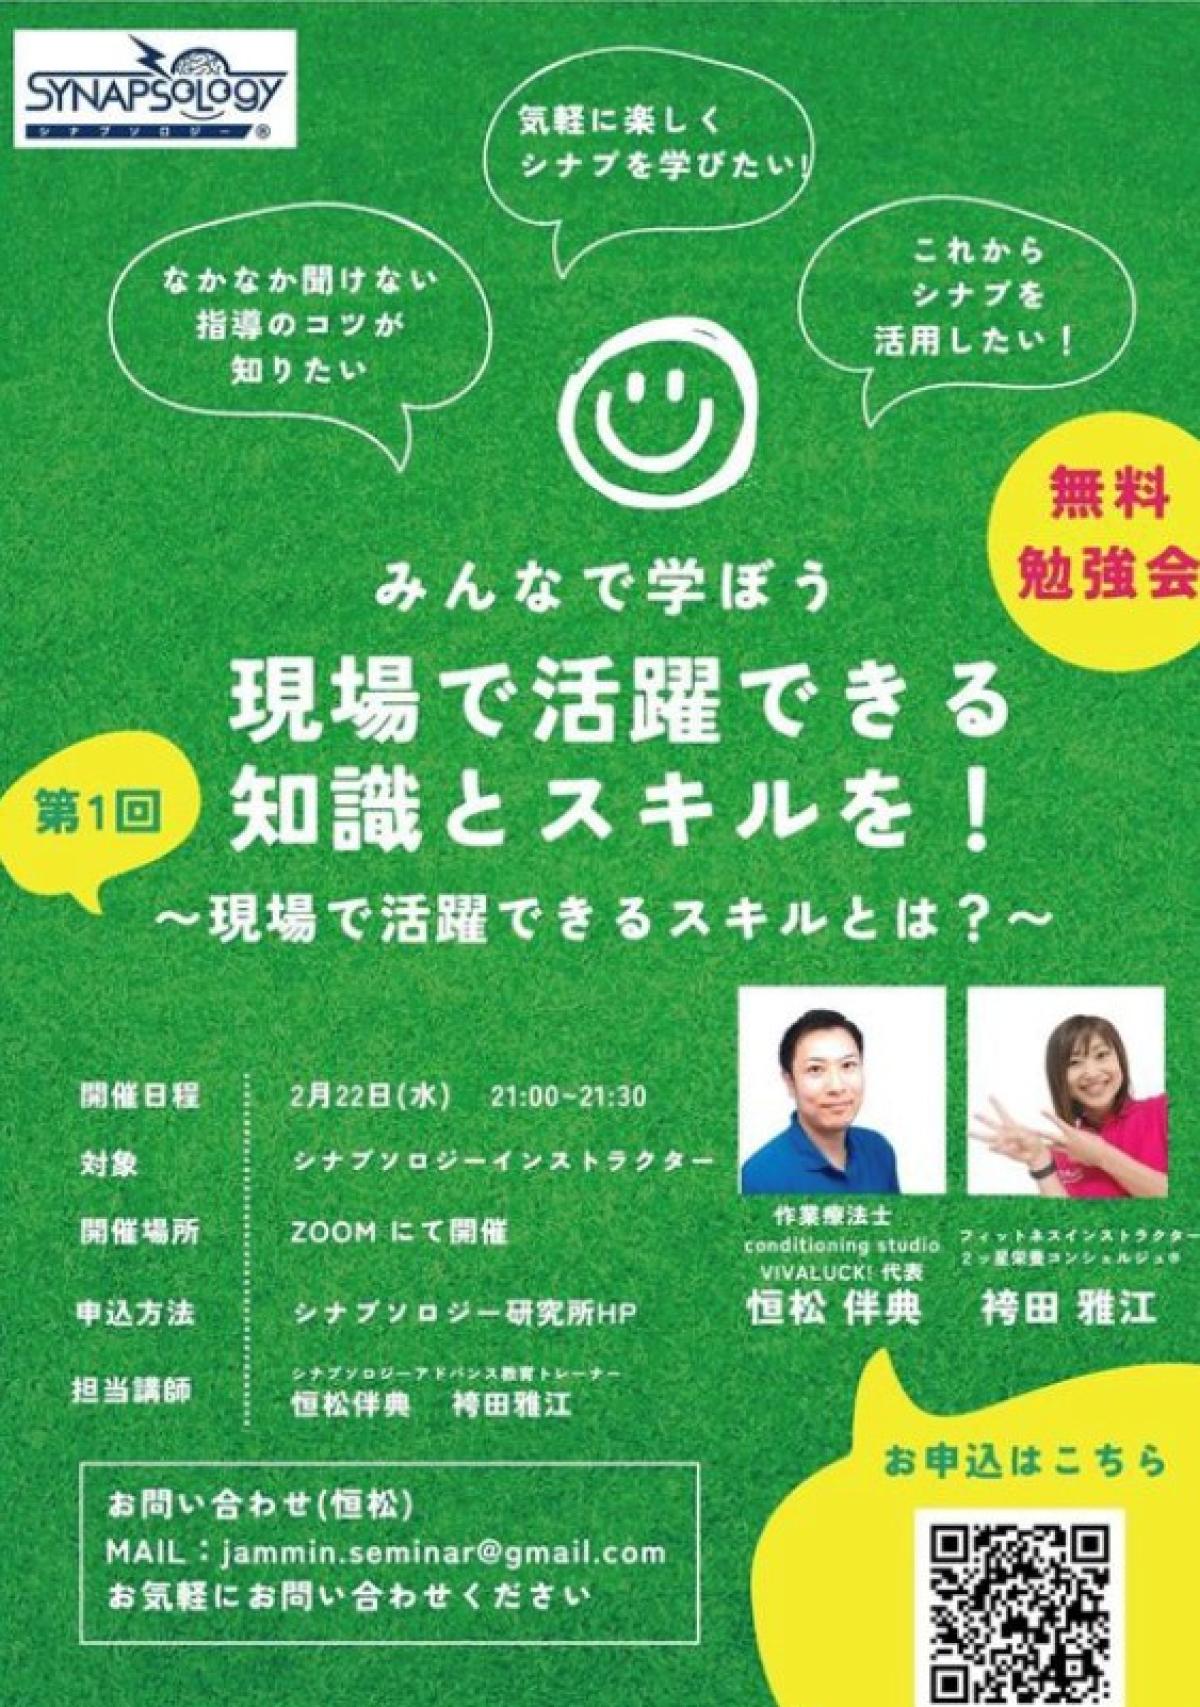 2月22日に袴田雅江さんがシナプソロジーインストラクター対象の勉強会を開催されます！【栄養コンシェルジュ取得後のご活躍】